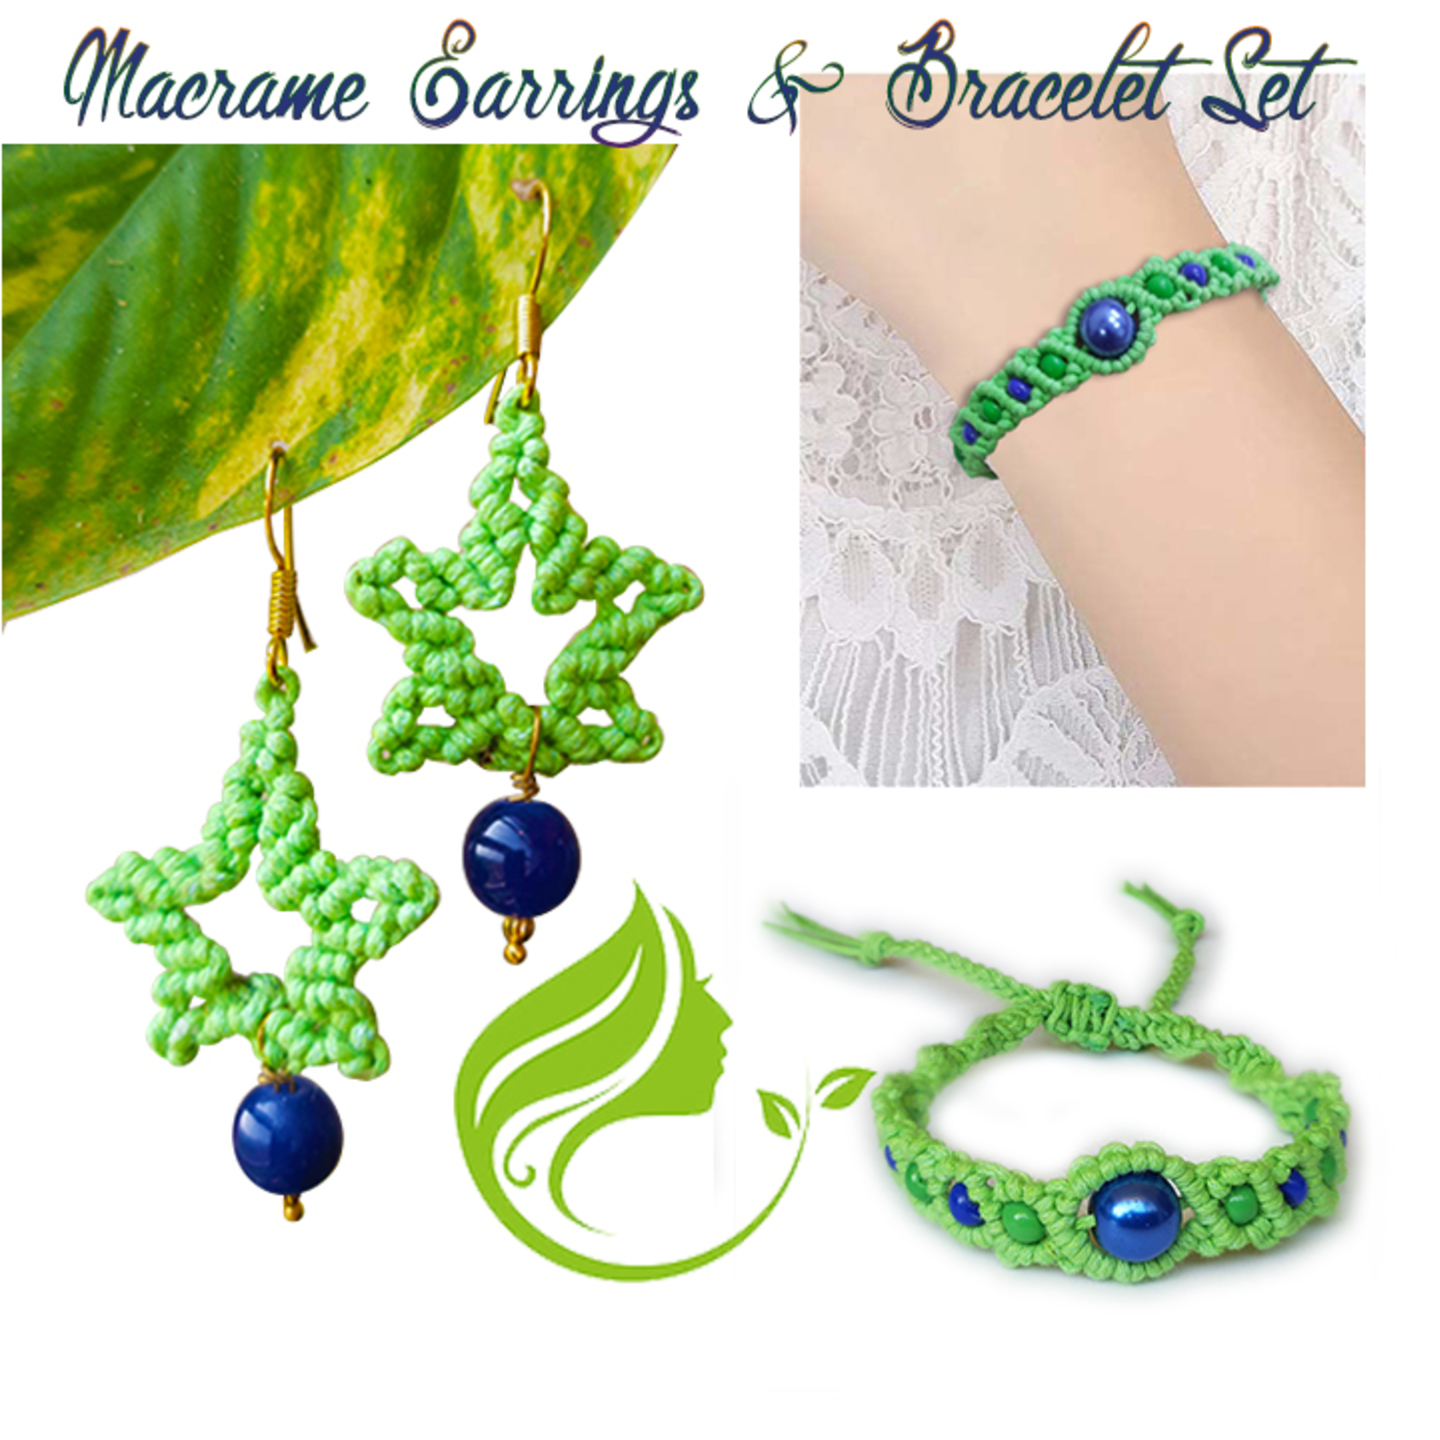 Macrame Earrings & Bracelet Combo